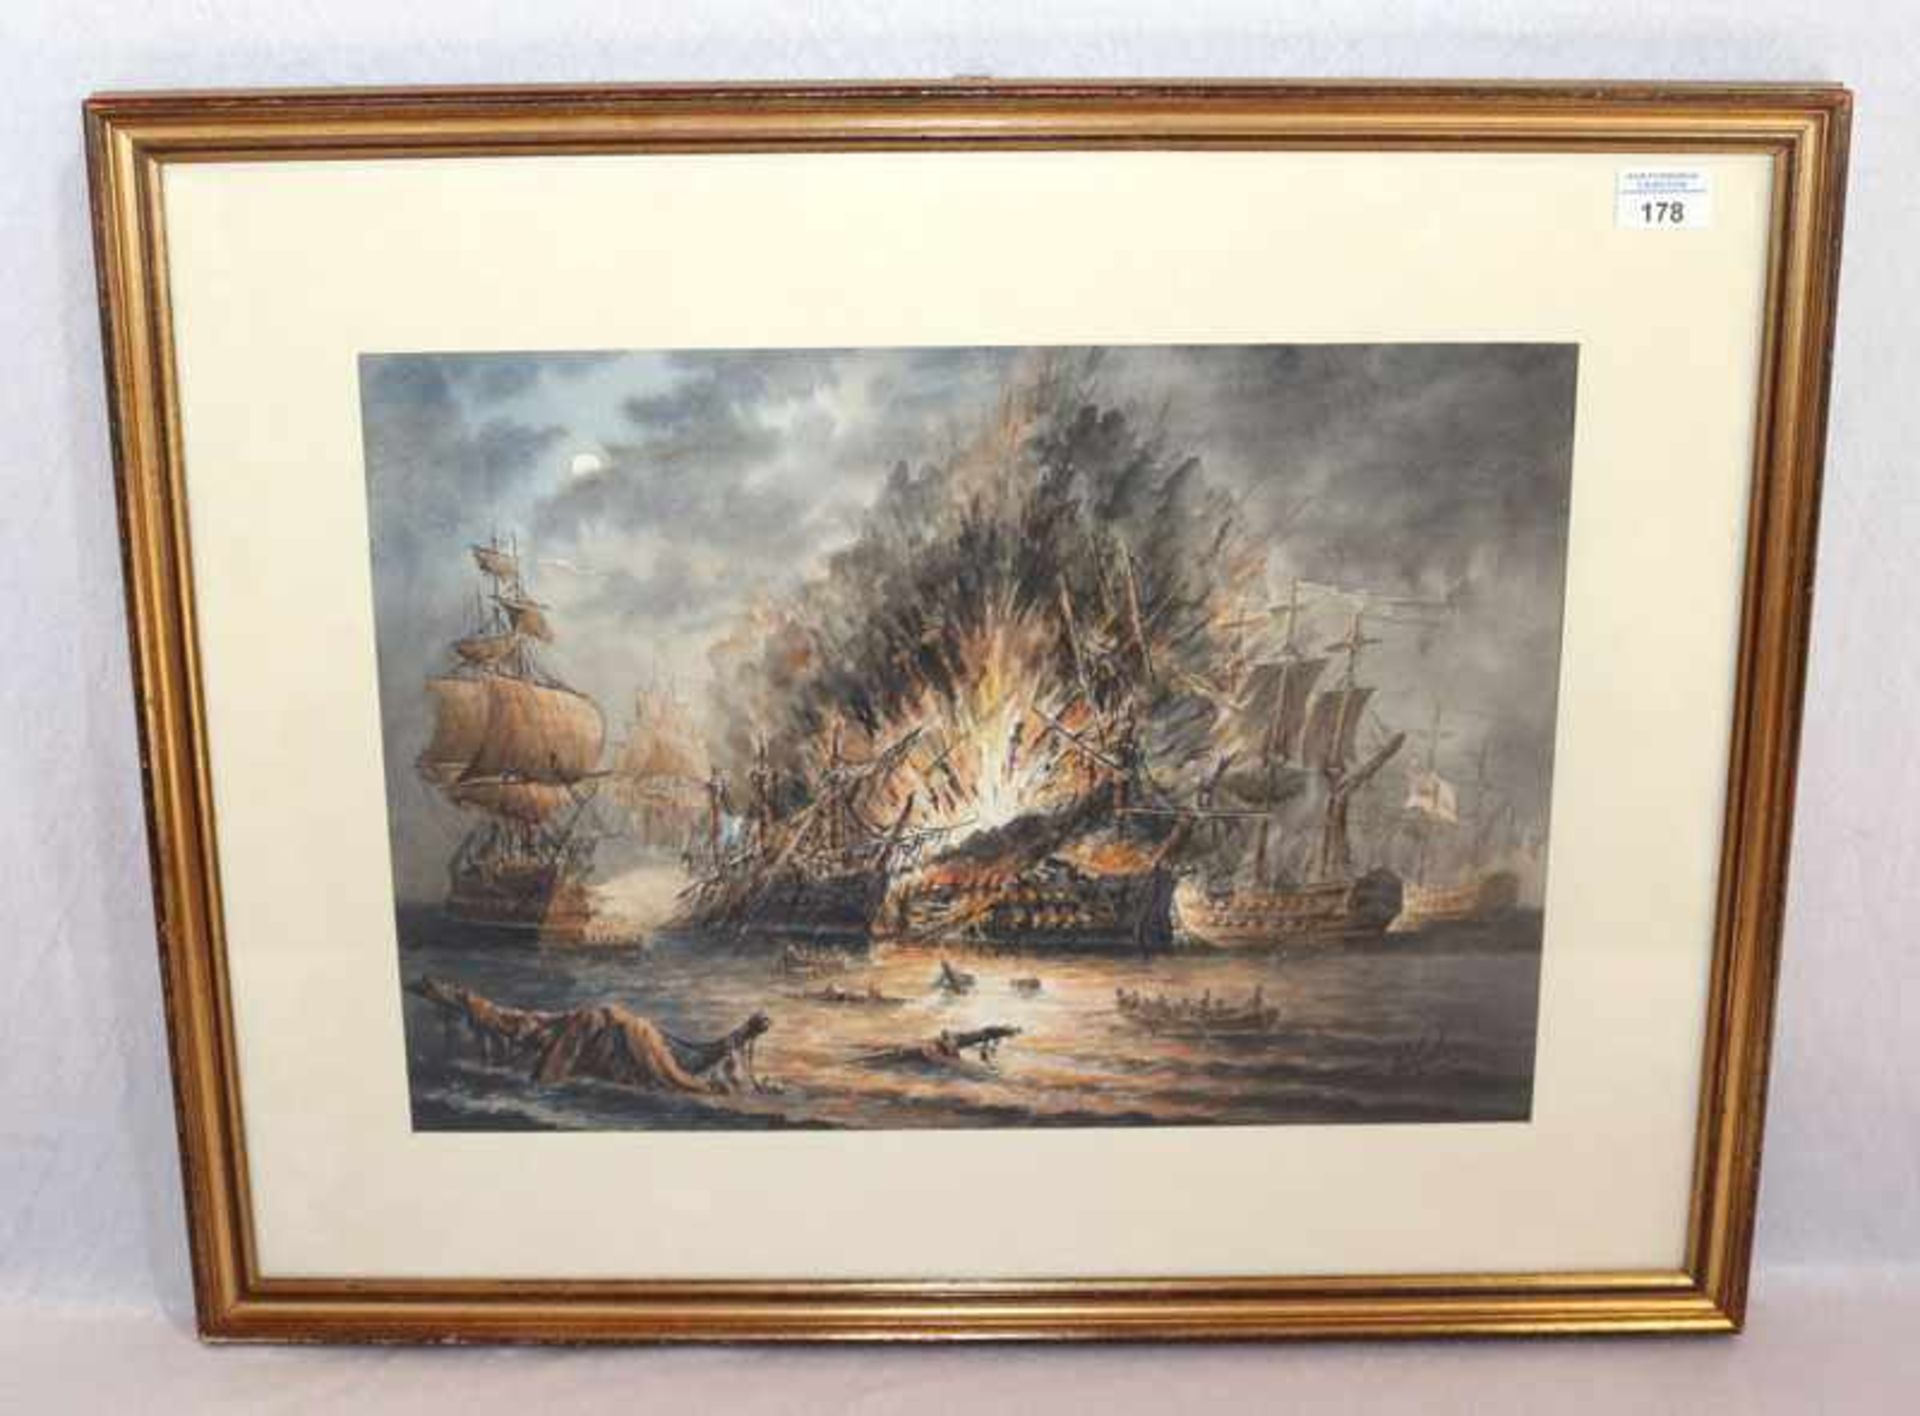 Aquarell 'Schlacht auf dem Nil 1798', signiert Edwin Galea, mit Passepartout unter Glas gerahmt,